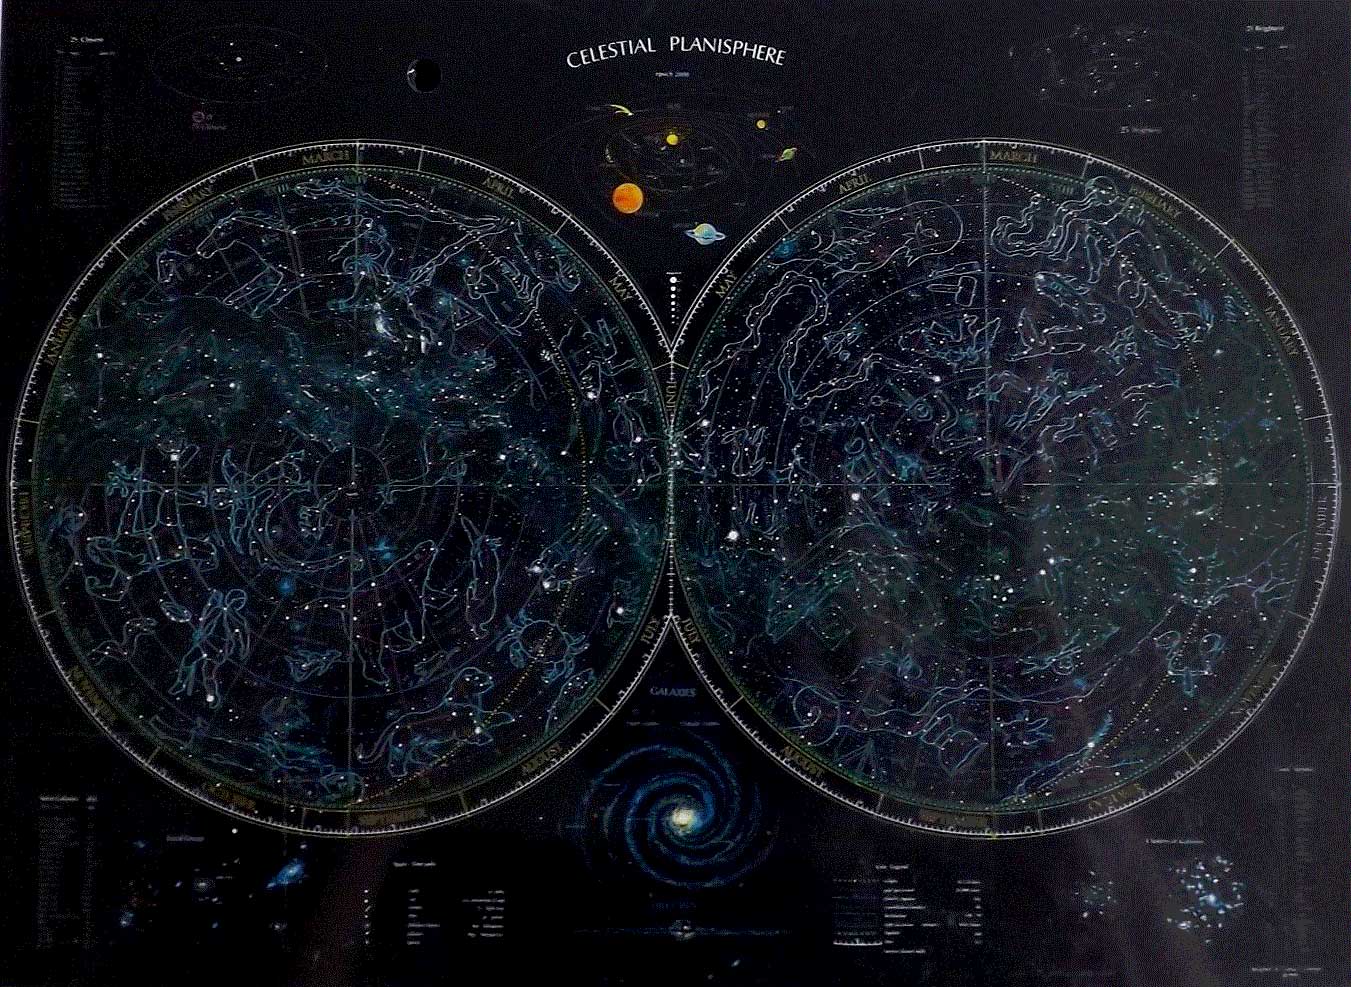 Celestial Chart Poster